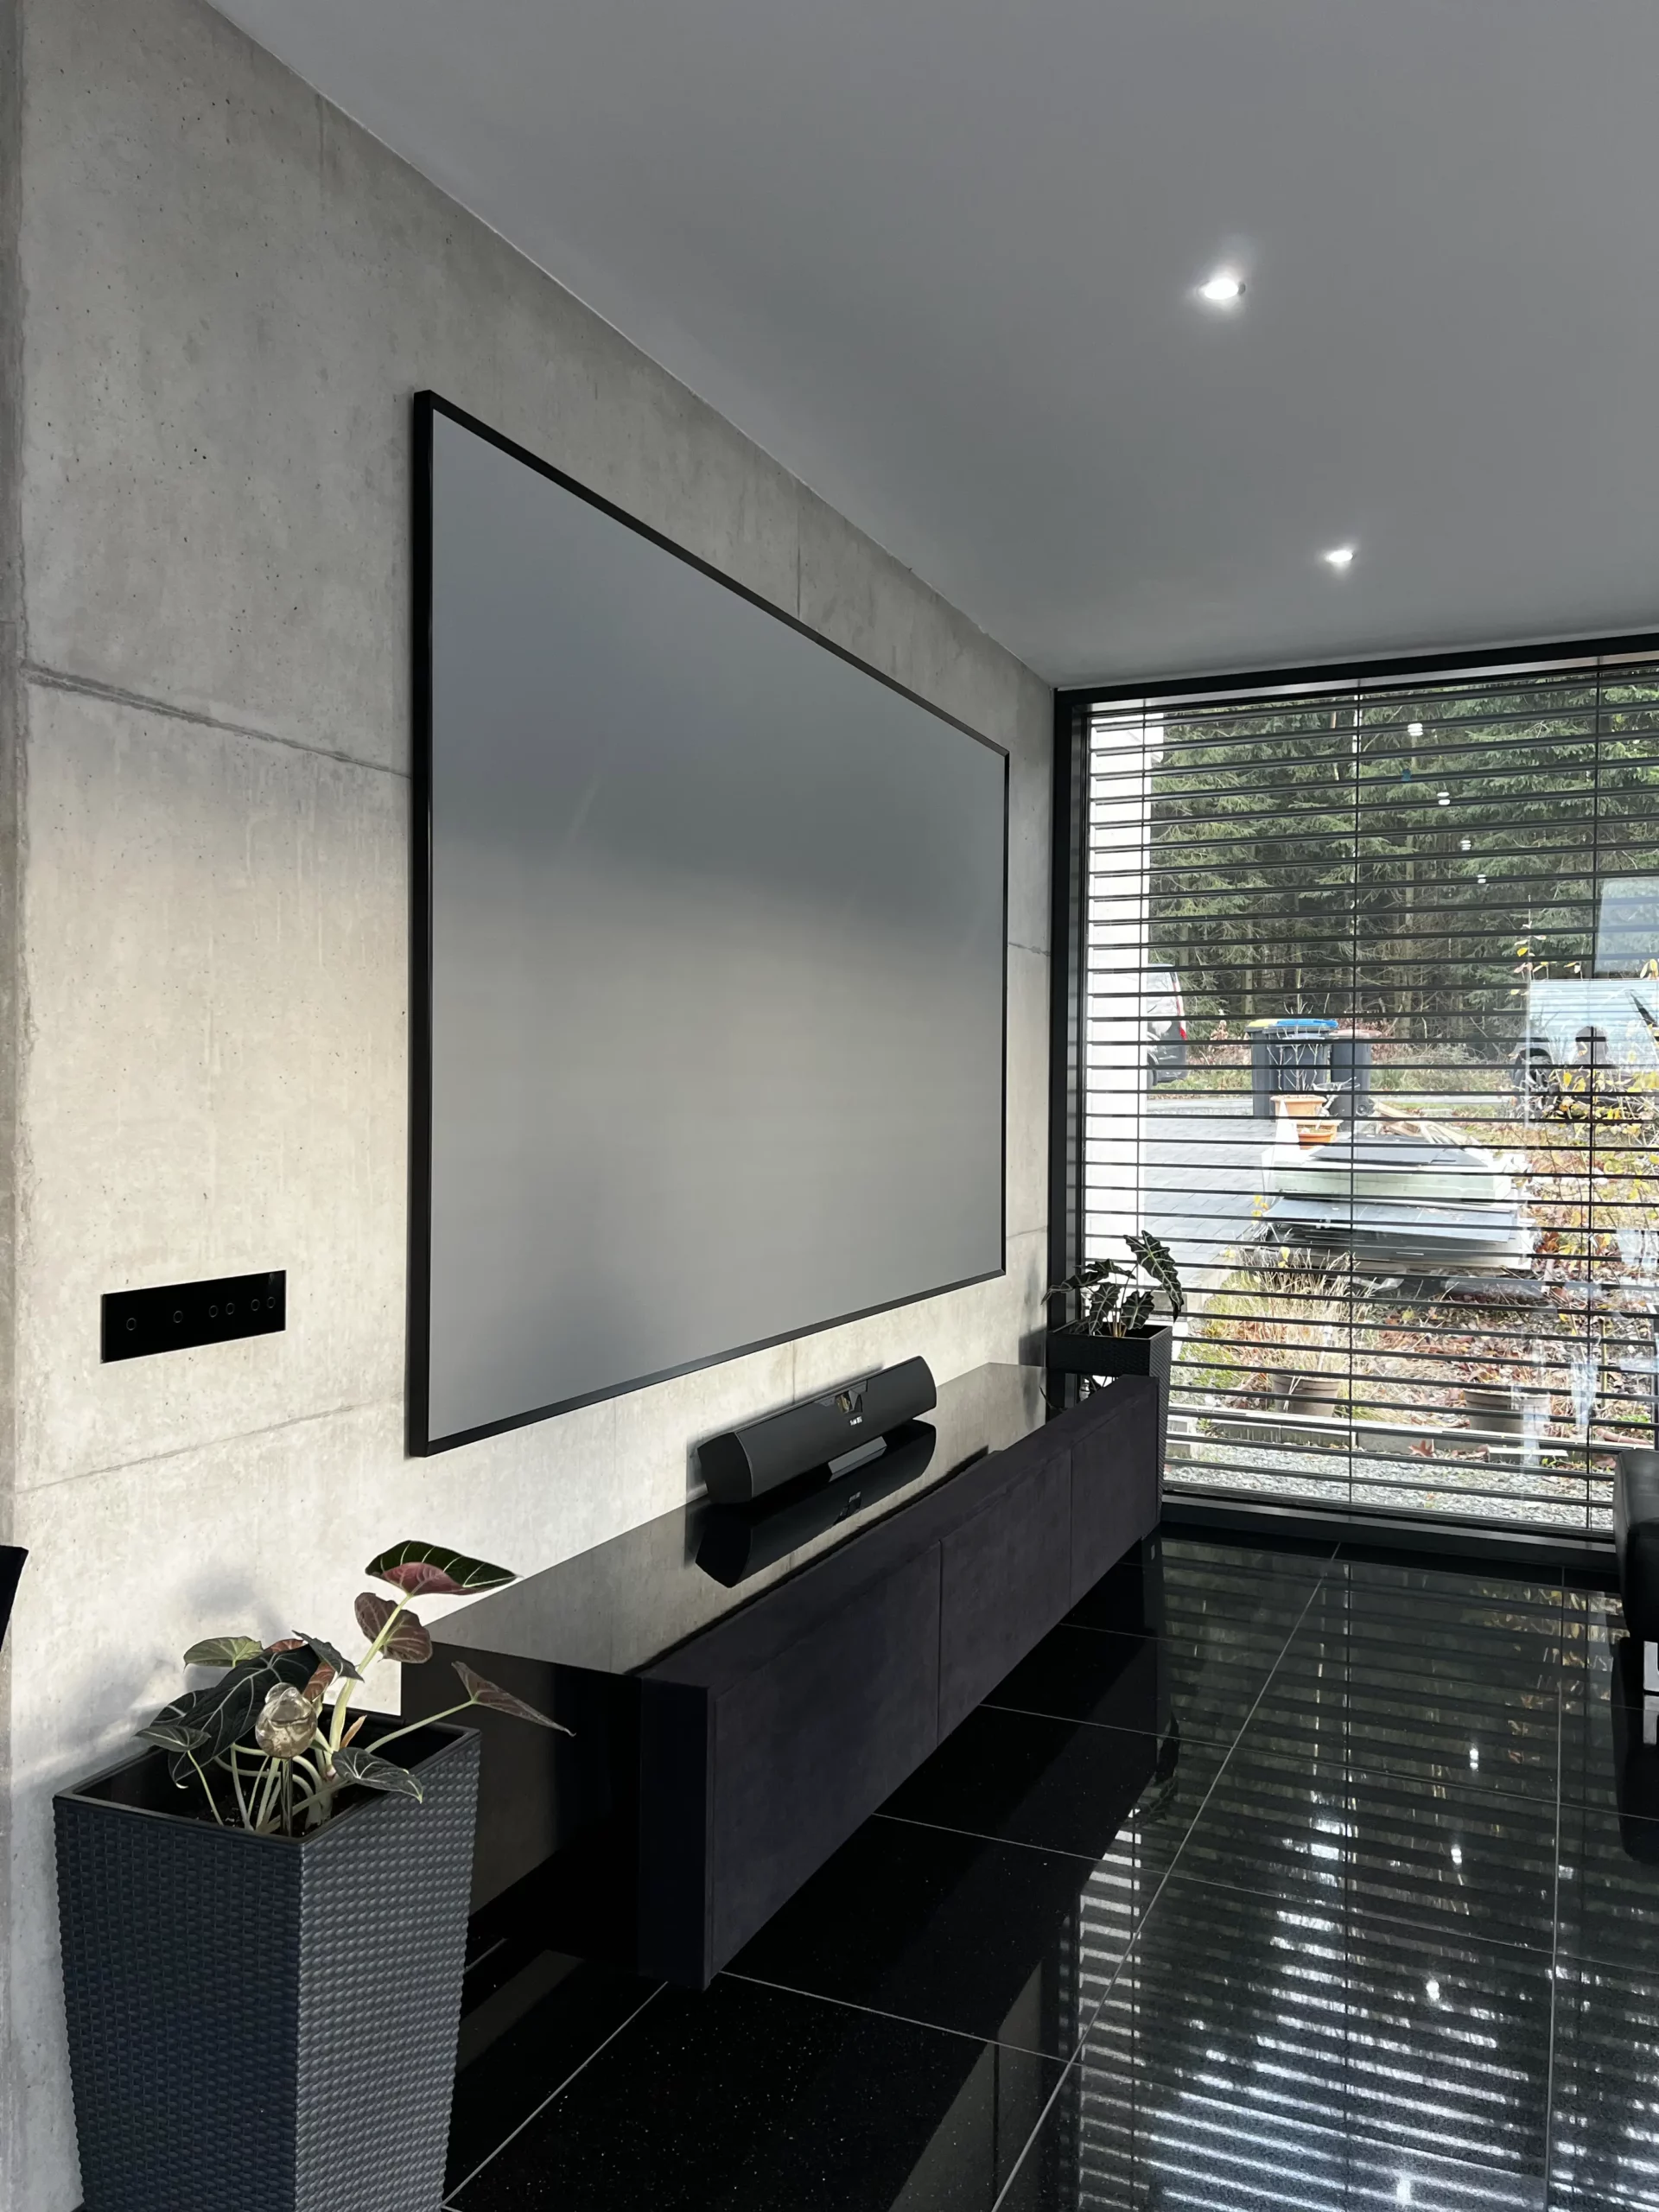 Schwarzes maßgefertigtes Laser TV in hyper modernen Wohnzimmer.